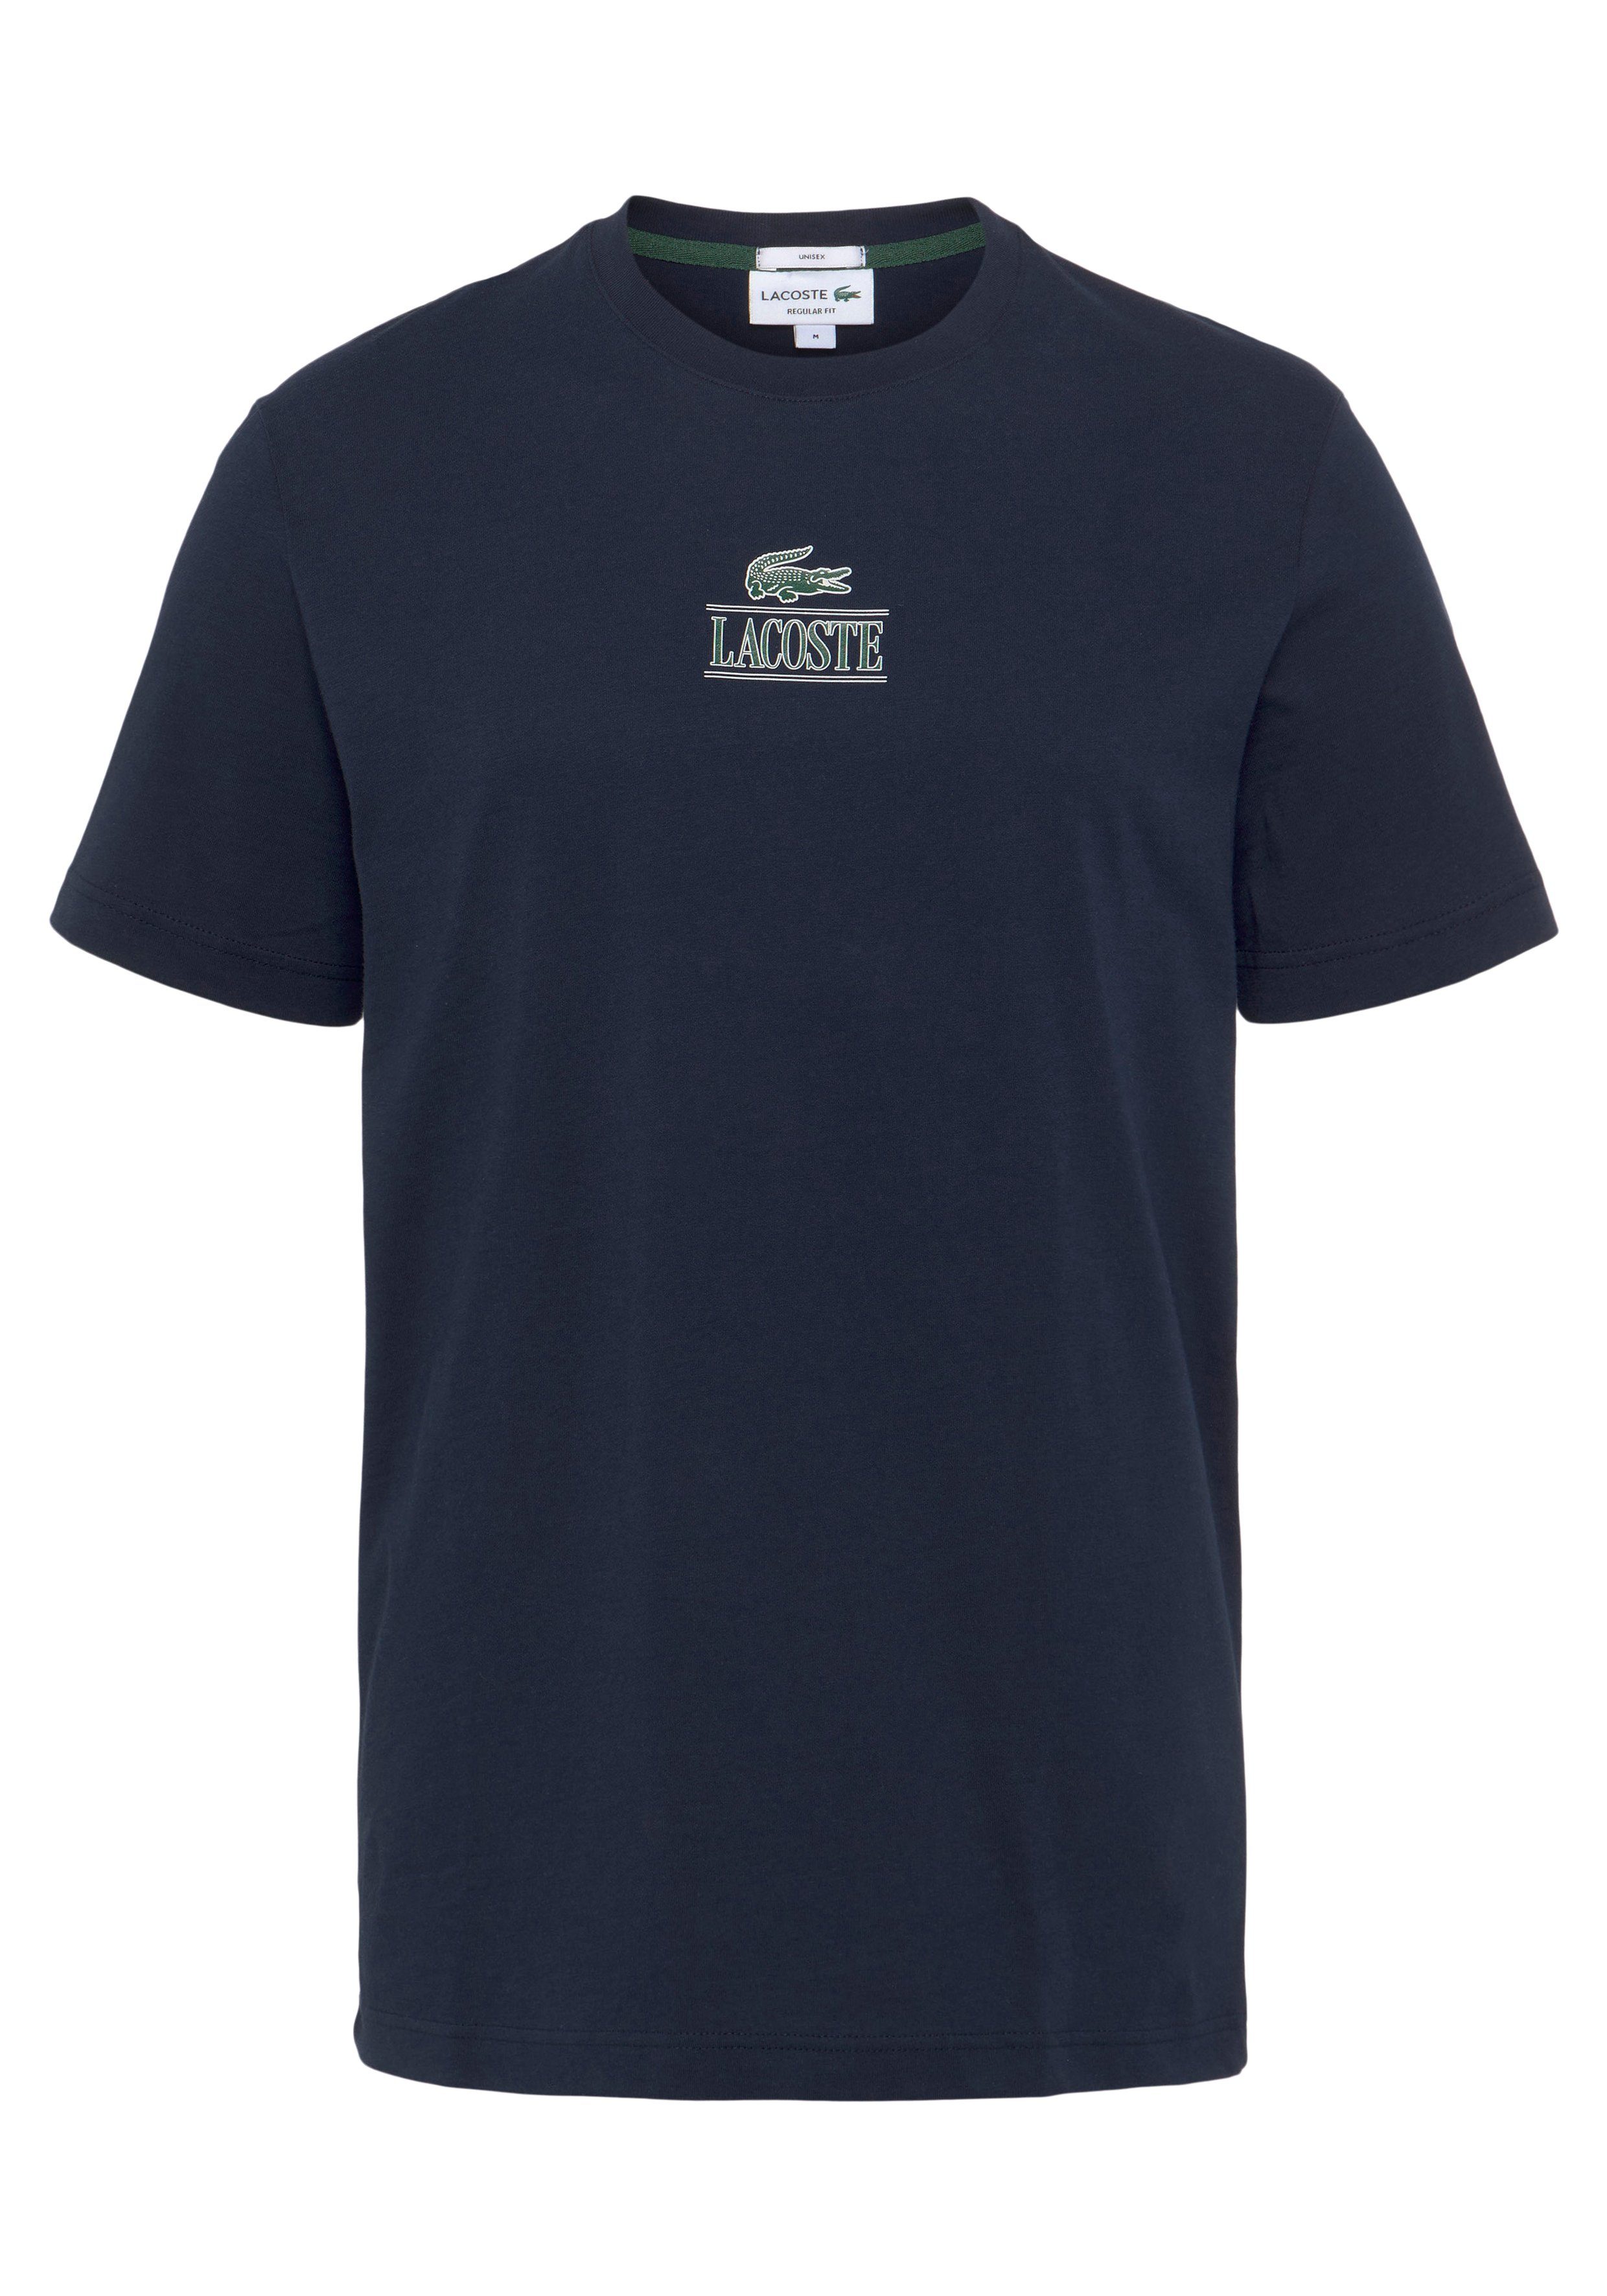 Lacoste T-Shirt T-SHIRT mit Lacoste Print auf der Brust NAVY BLUE